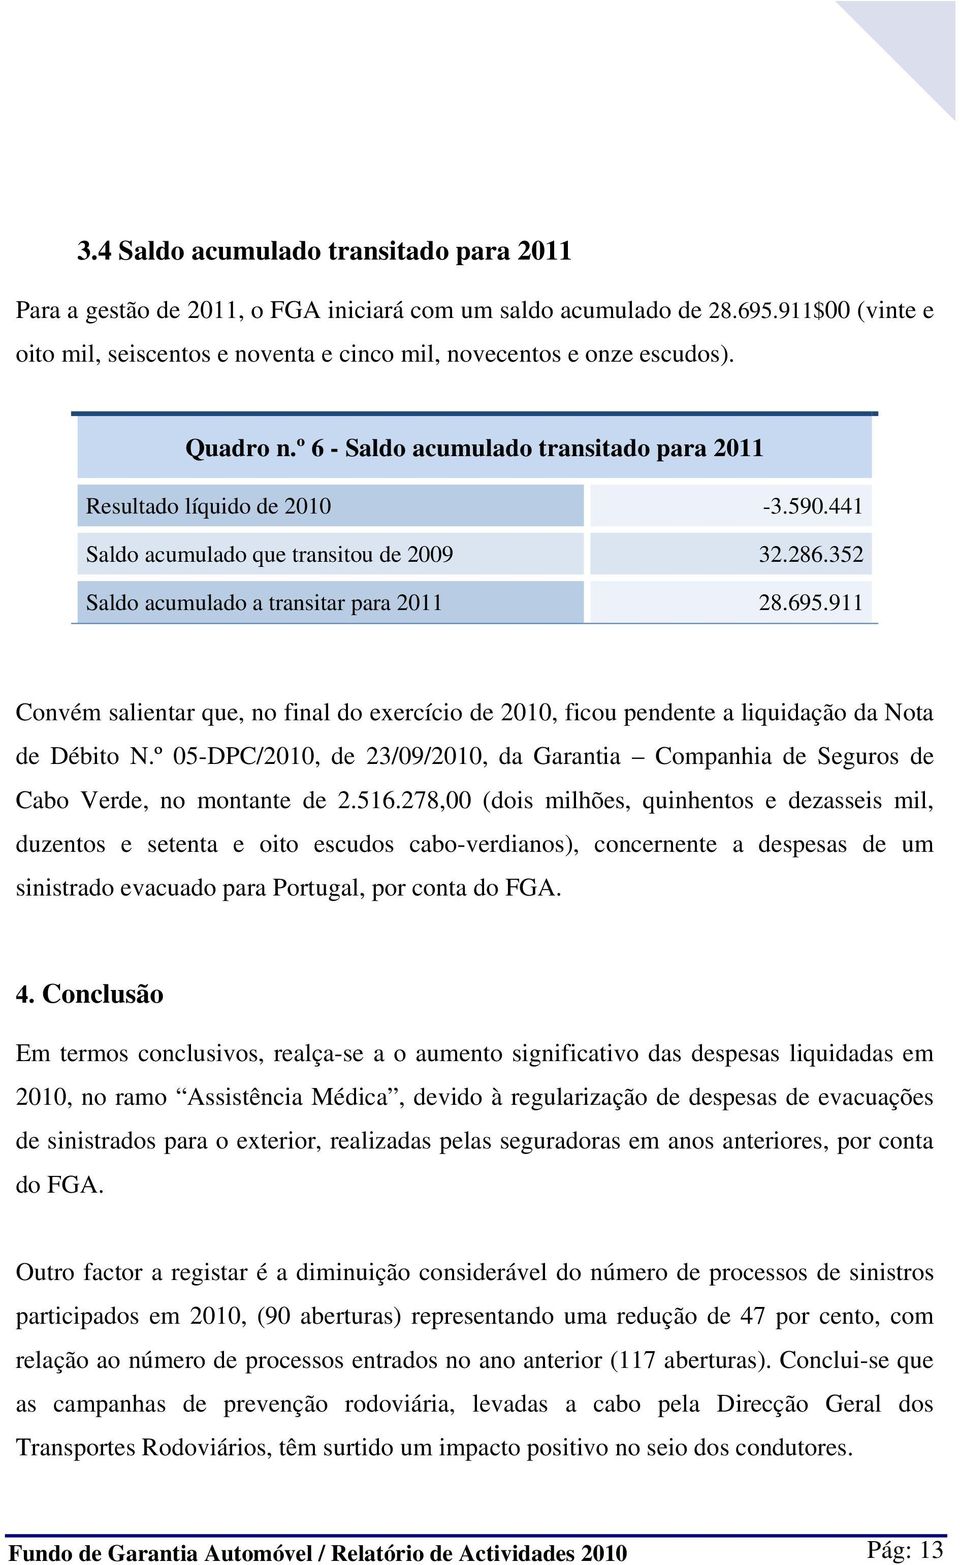 911 Convém salientar que, no final do exercício de 2010, ficou pendente a liquidação da Nota de Débito N.º 05-DPC/2010, de 23/09/2010, da Garantia Companhia de Seguros de Cabo Verde, no montante de 2.